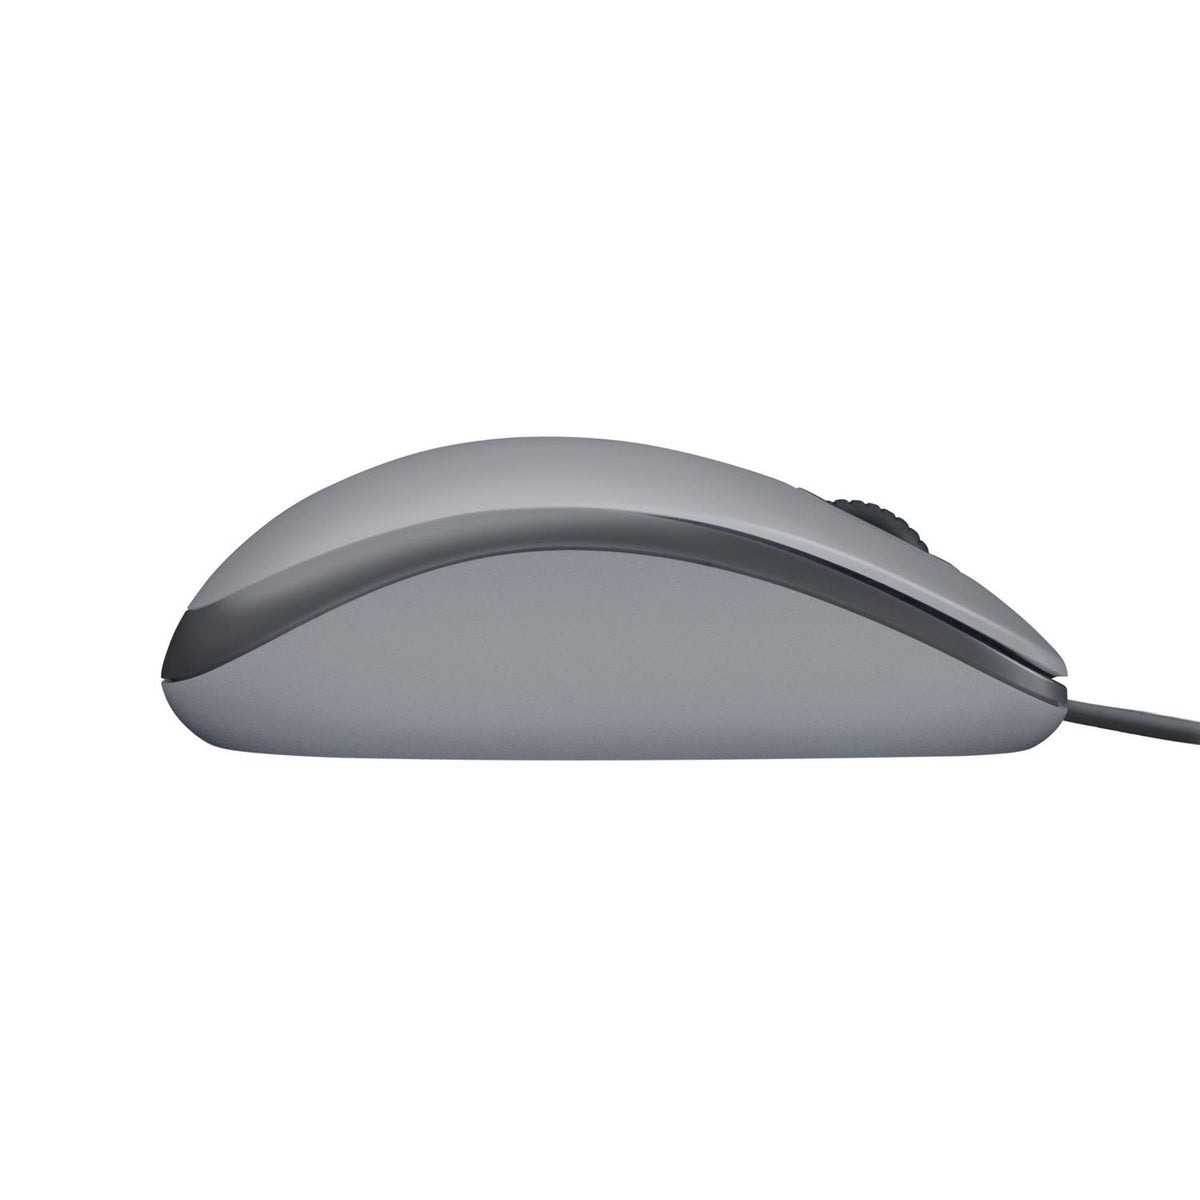 Logitech Mouse Mouse M110 Silent - vertikal